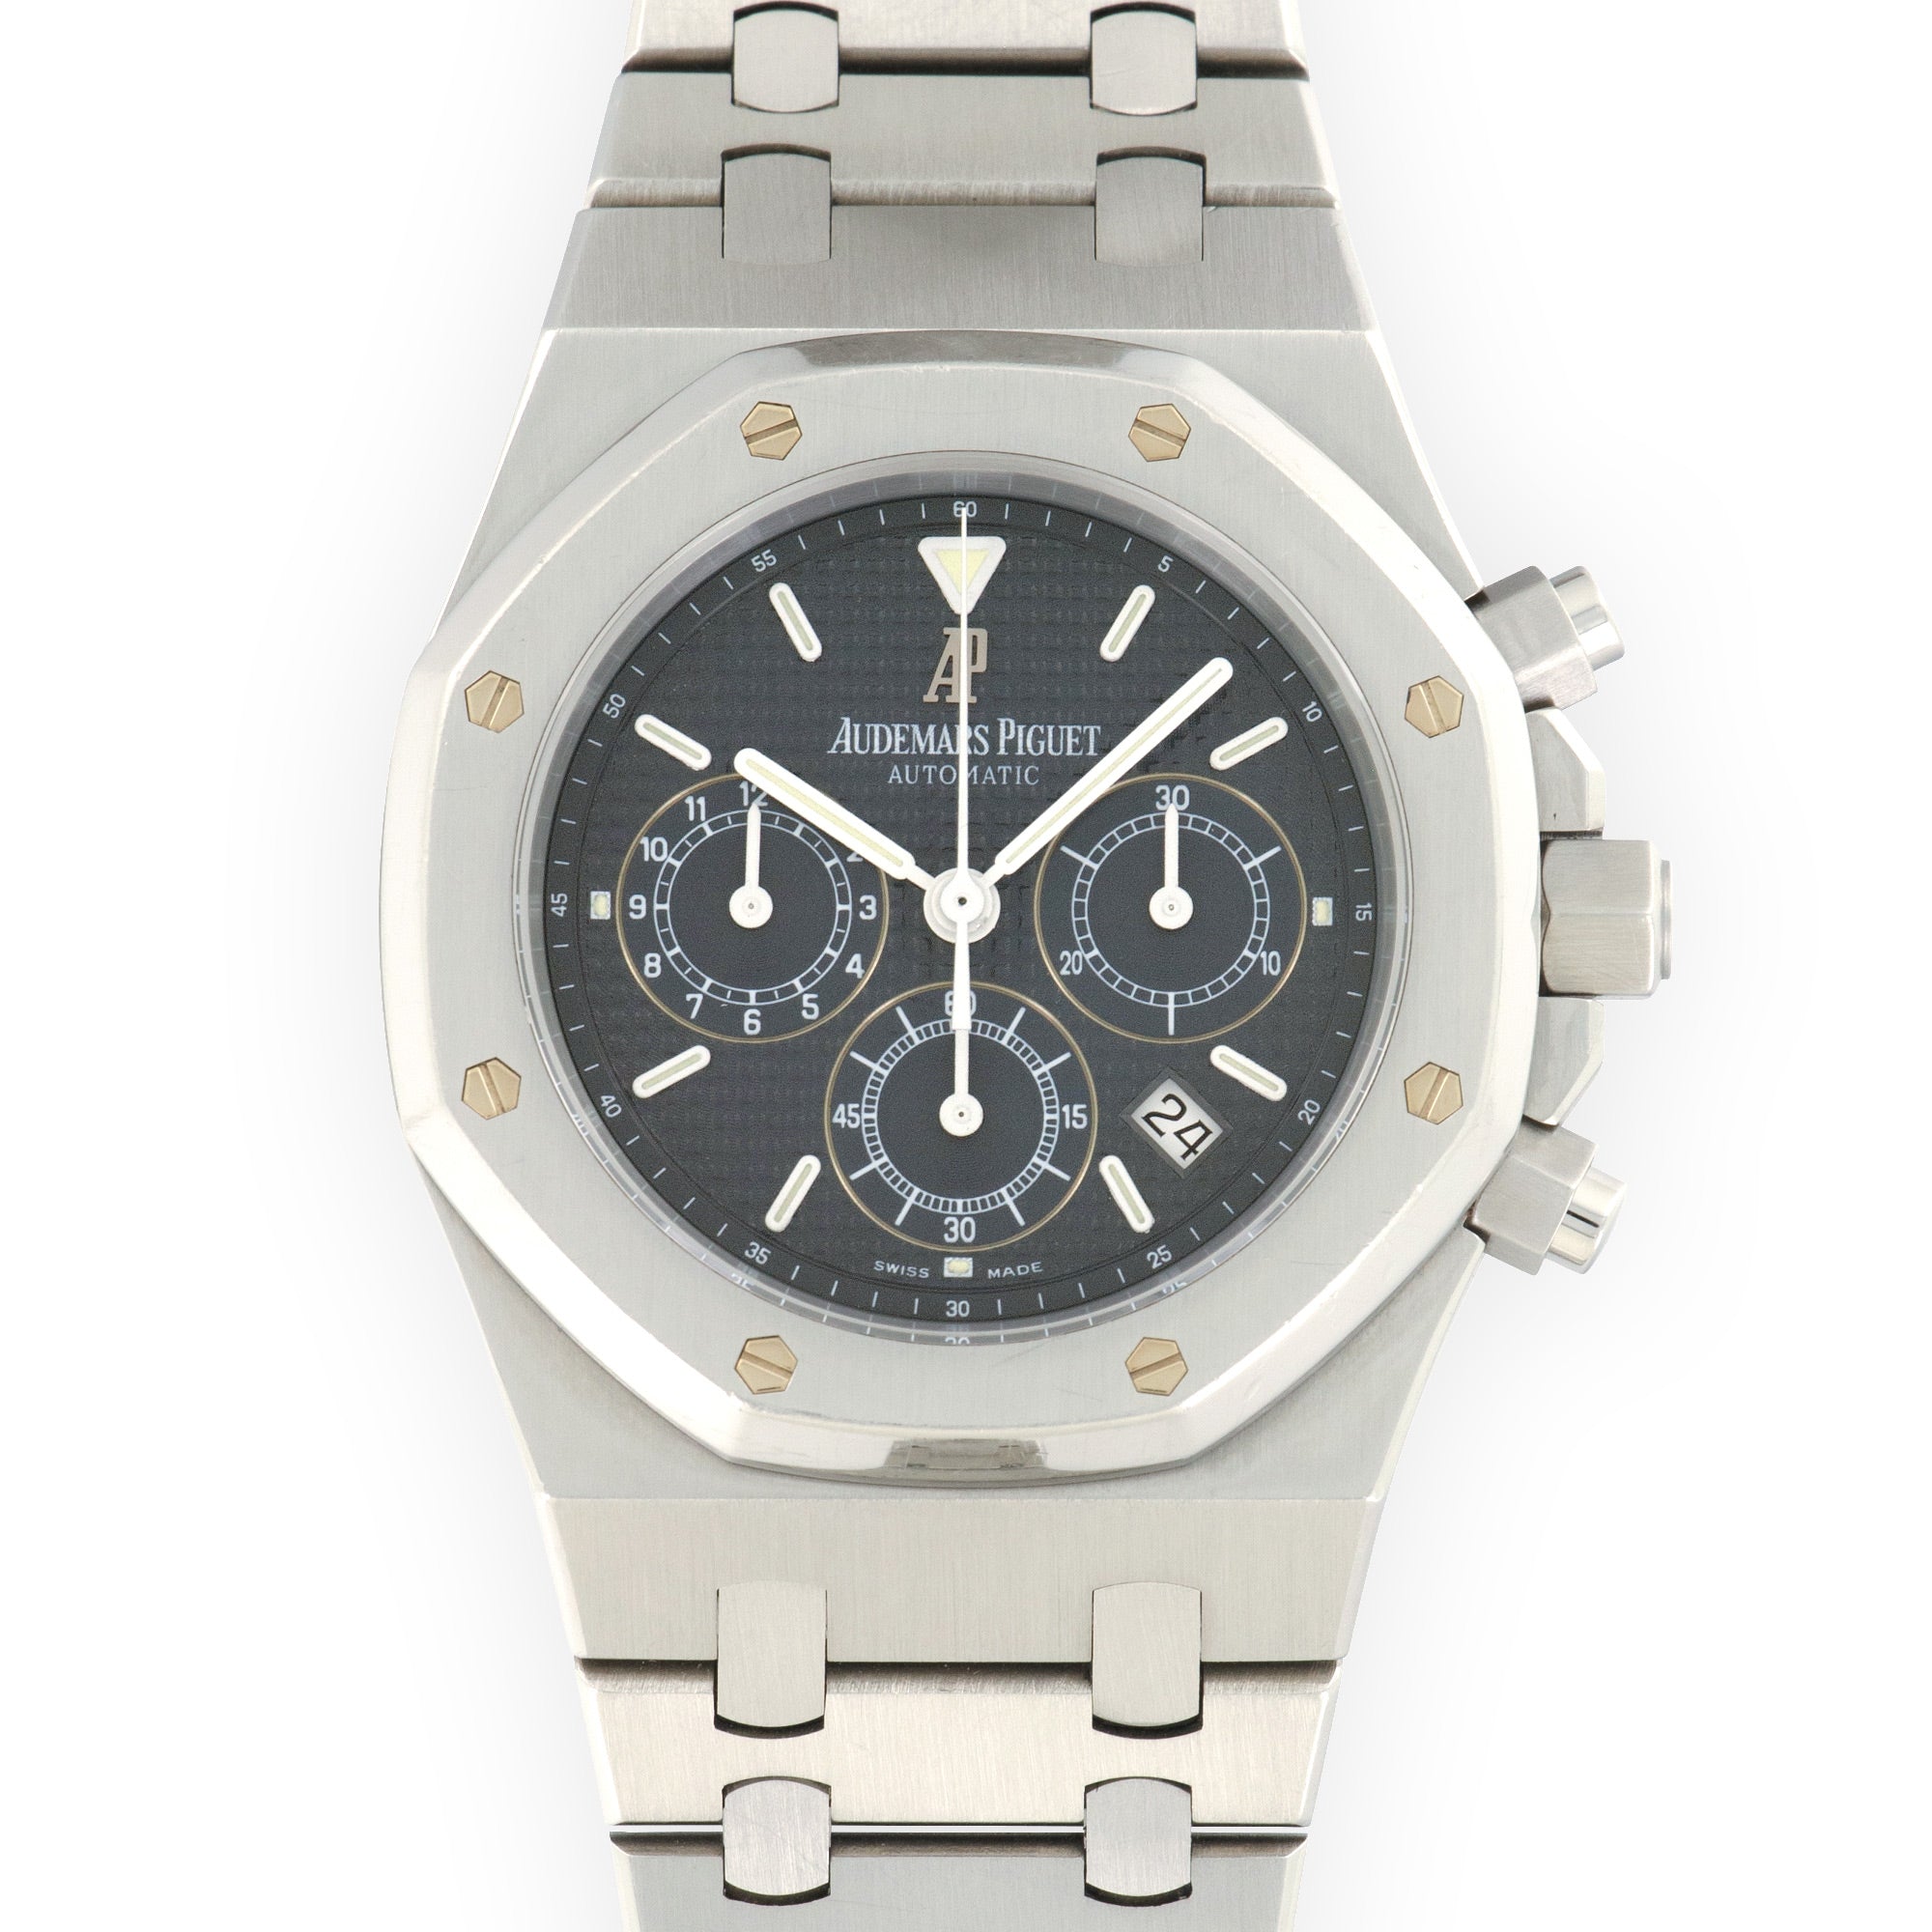 Audemars Piguet - Audemars Piguet Royal Oak Chronograph Blue Watch Ref. 25860ST - The Keystone Watches